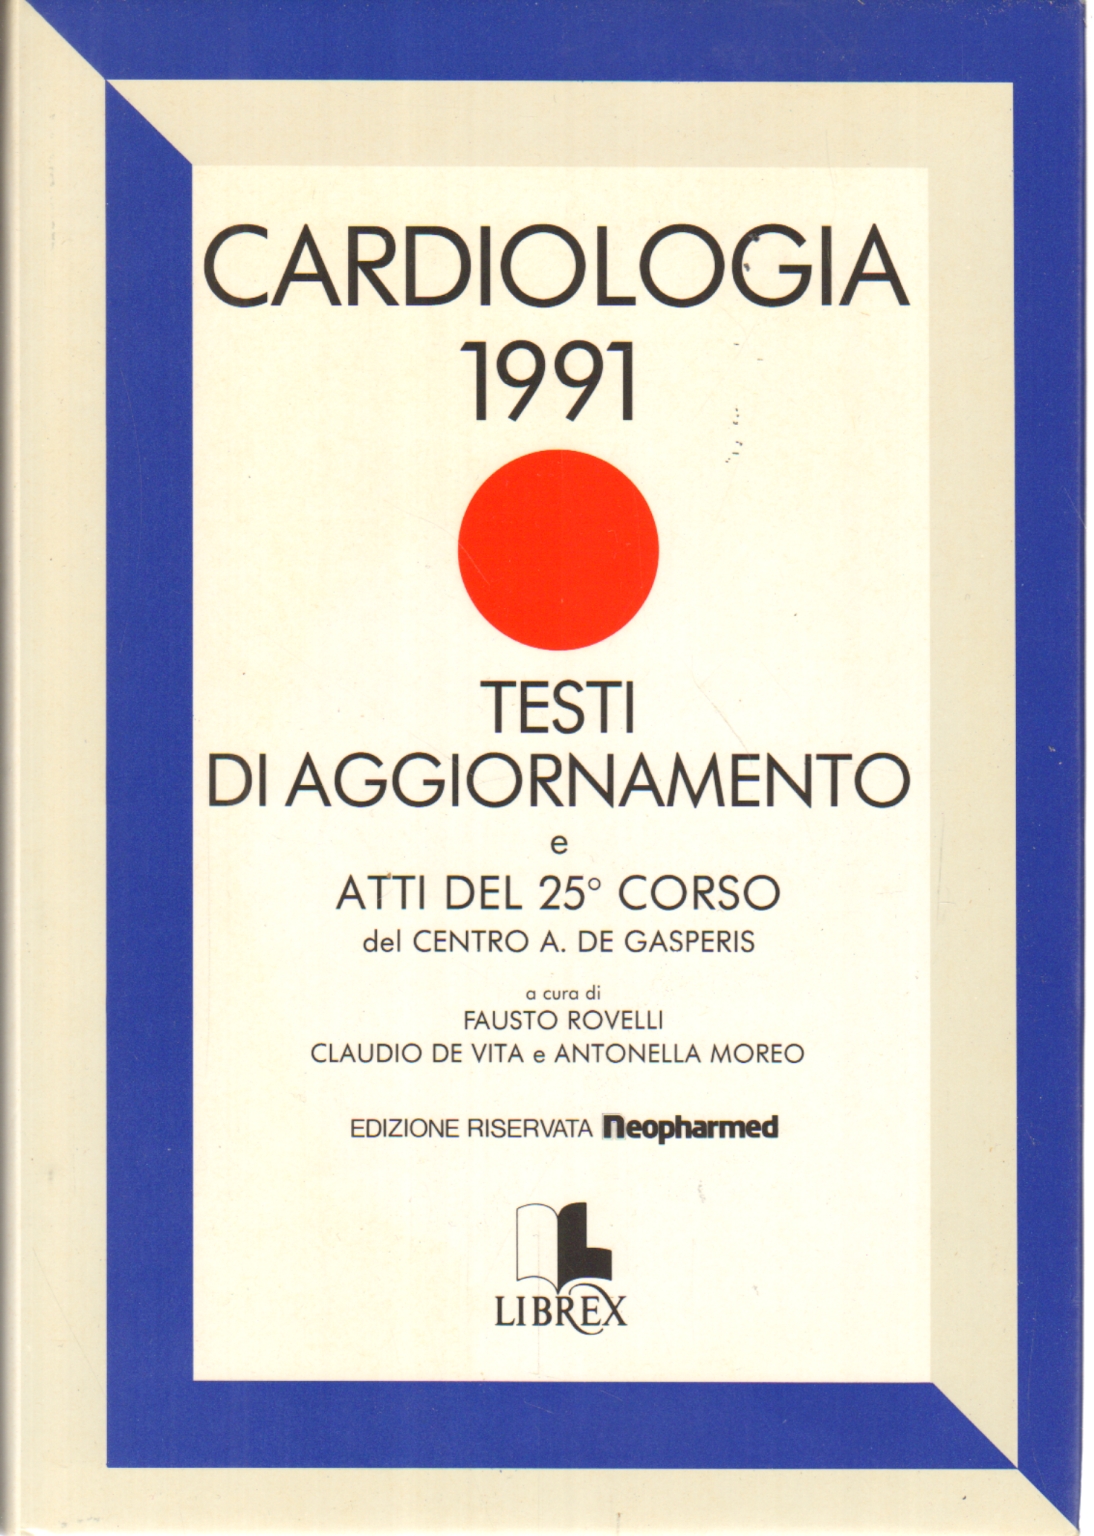 Cardiologia 1991